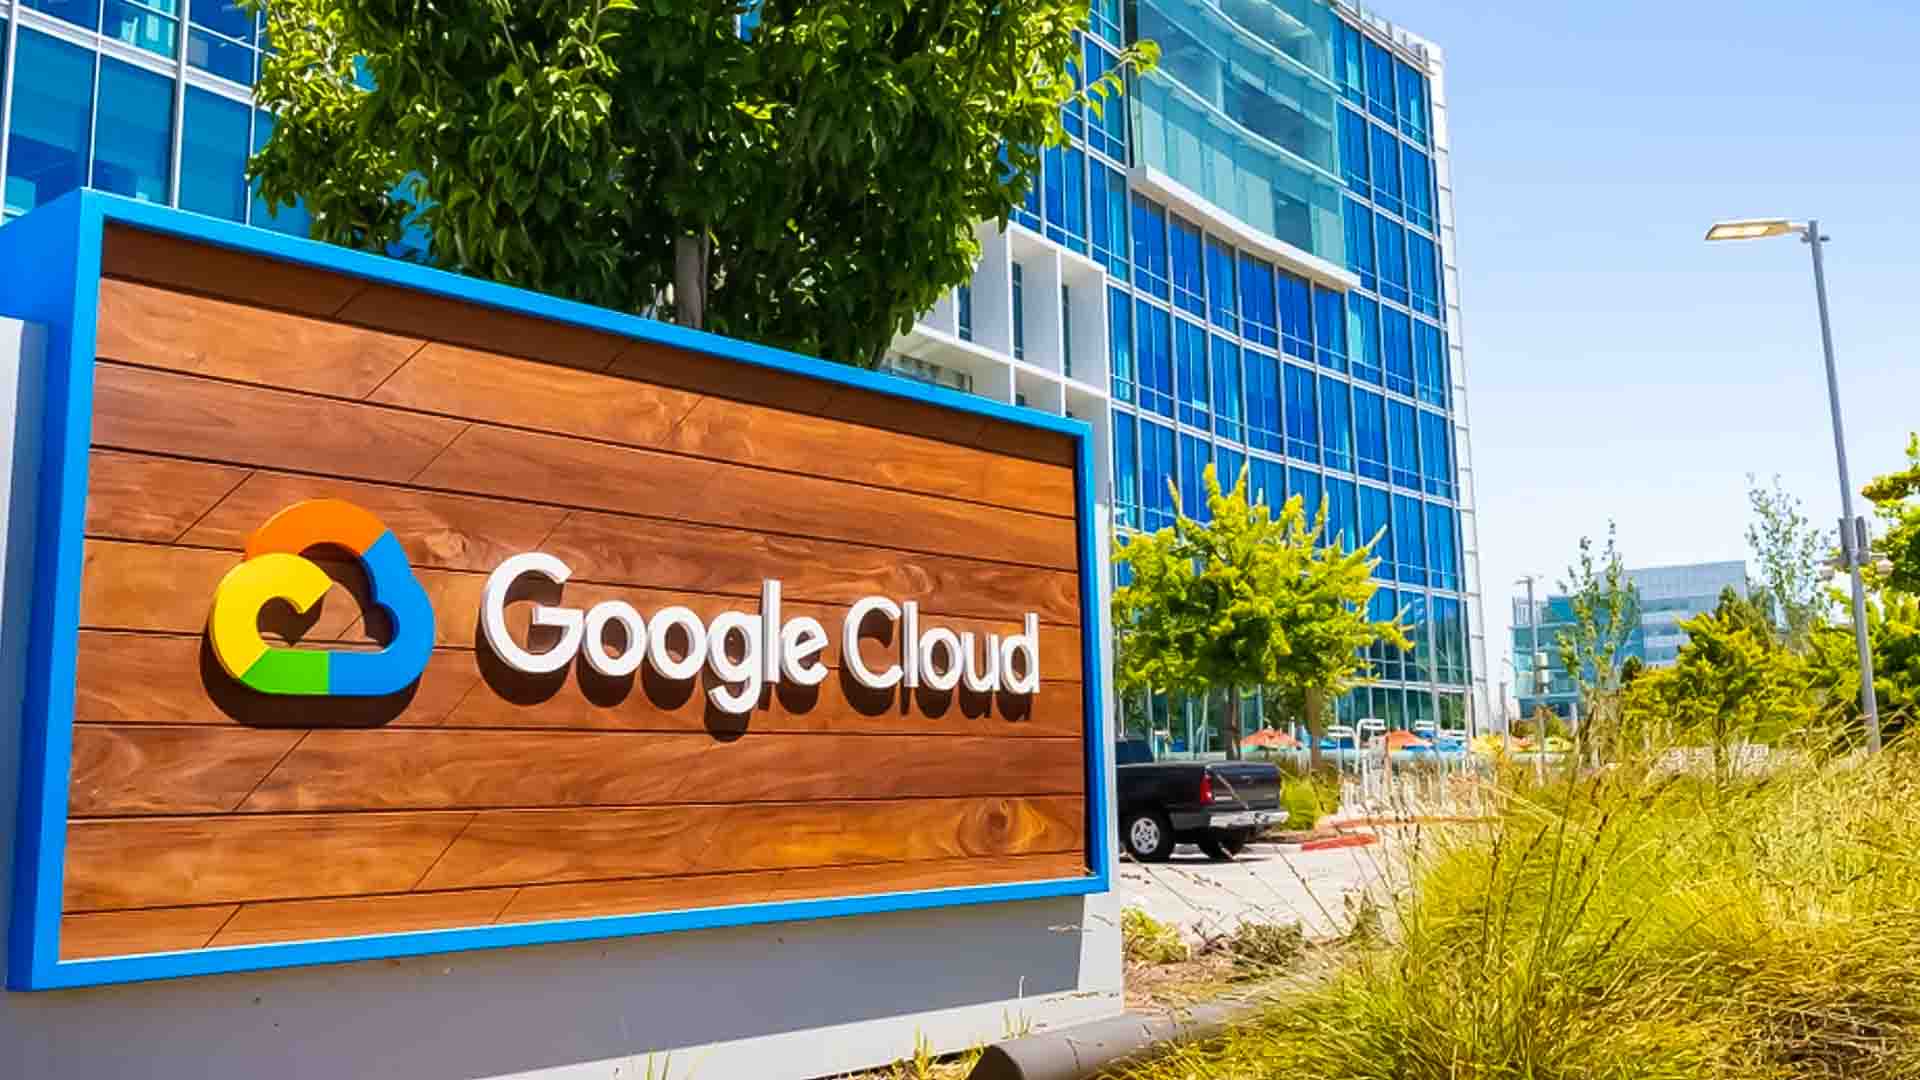 ক্রিপ্টো সম্প্রদায় Google ক্লাউডের ওয়েব3 উদ্যোগে বিভক্ত